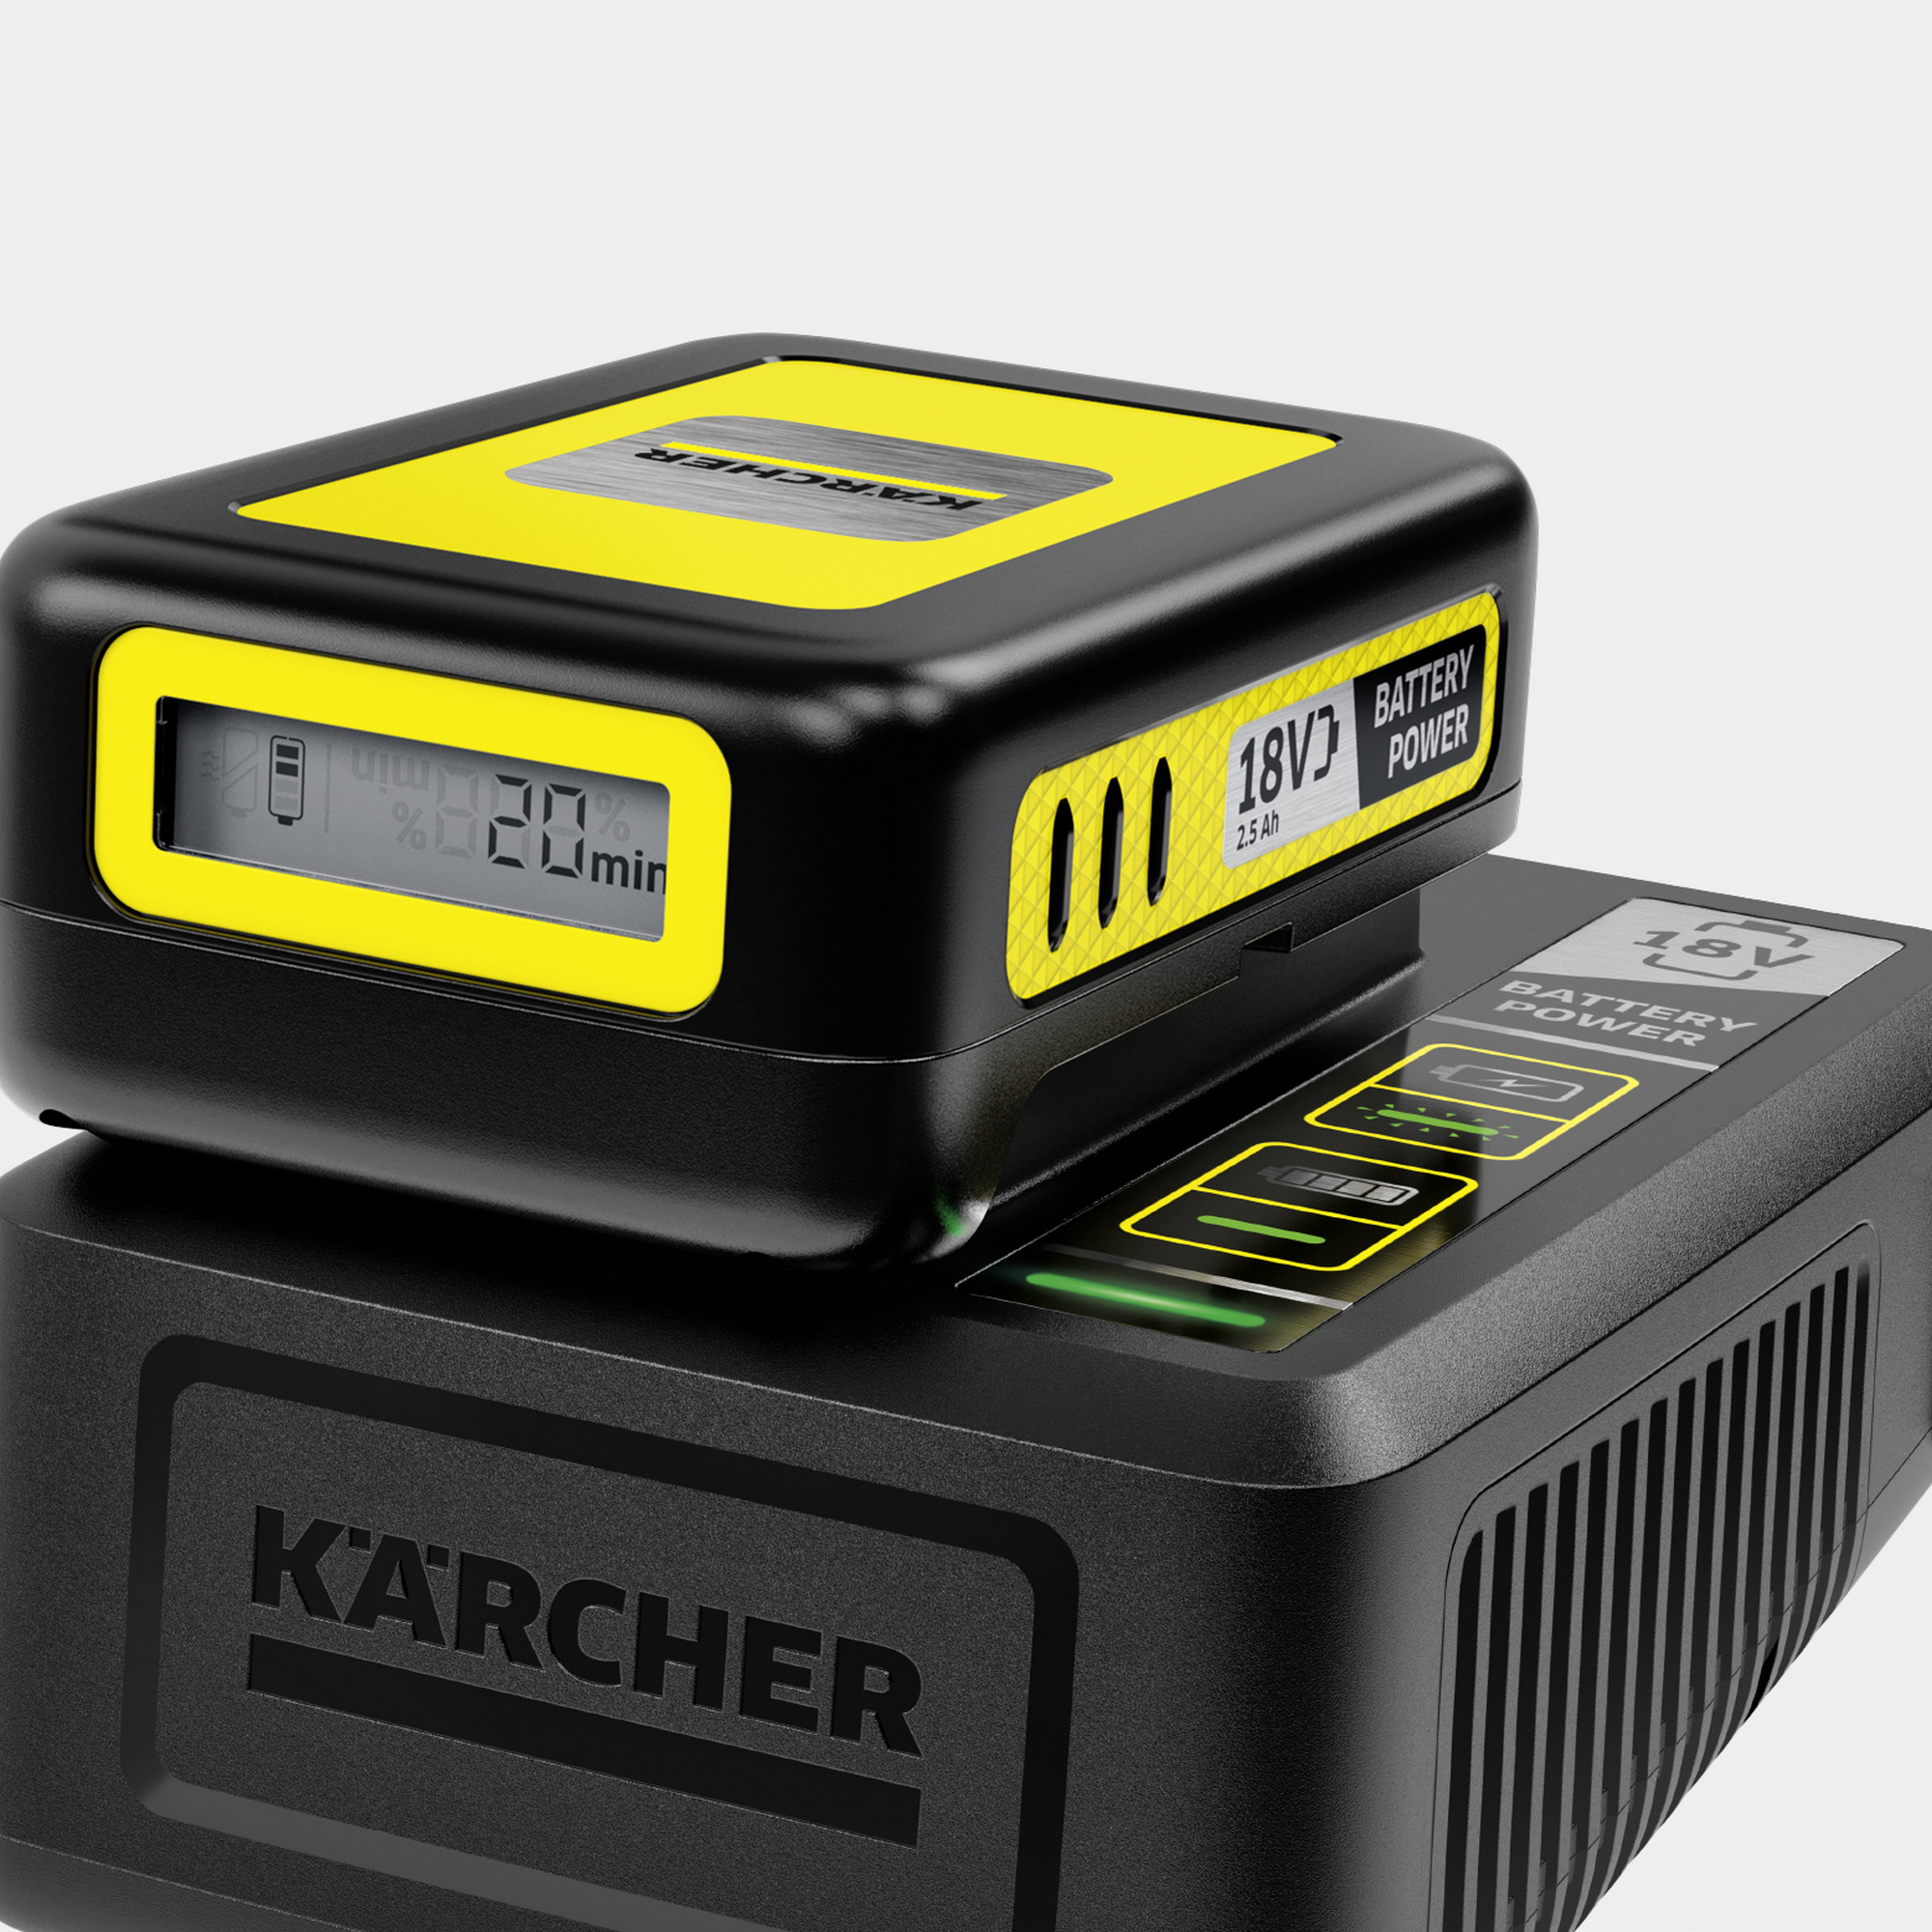 Starter-Kit 'Battery Power 18/50' Wechselakku mit Schnellladegerät, 18 V 5,0 Ah + product picture